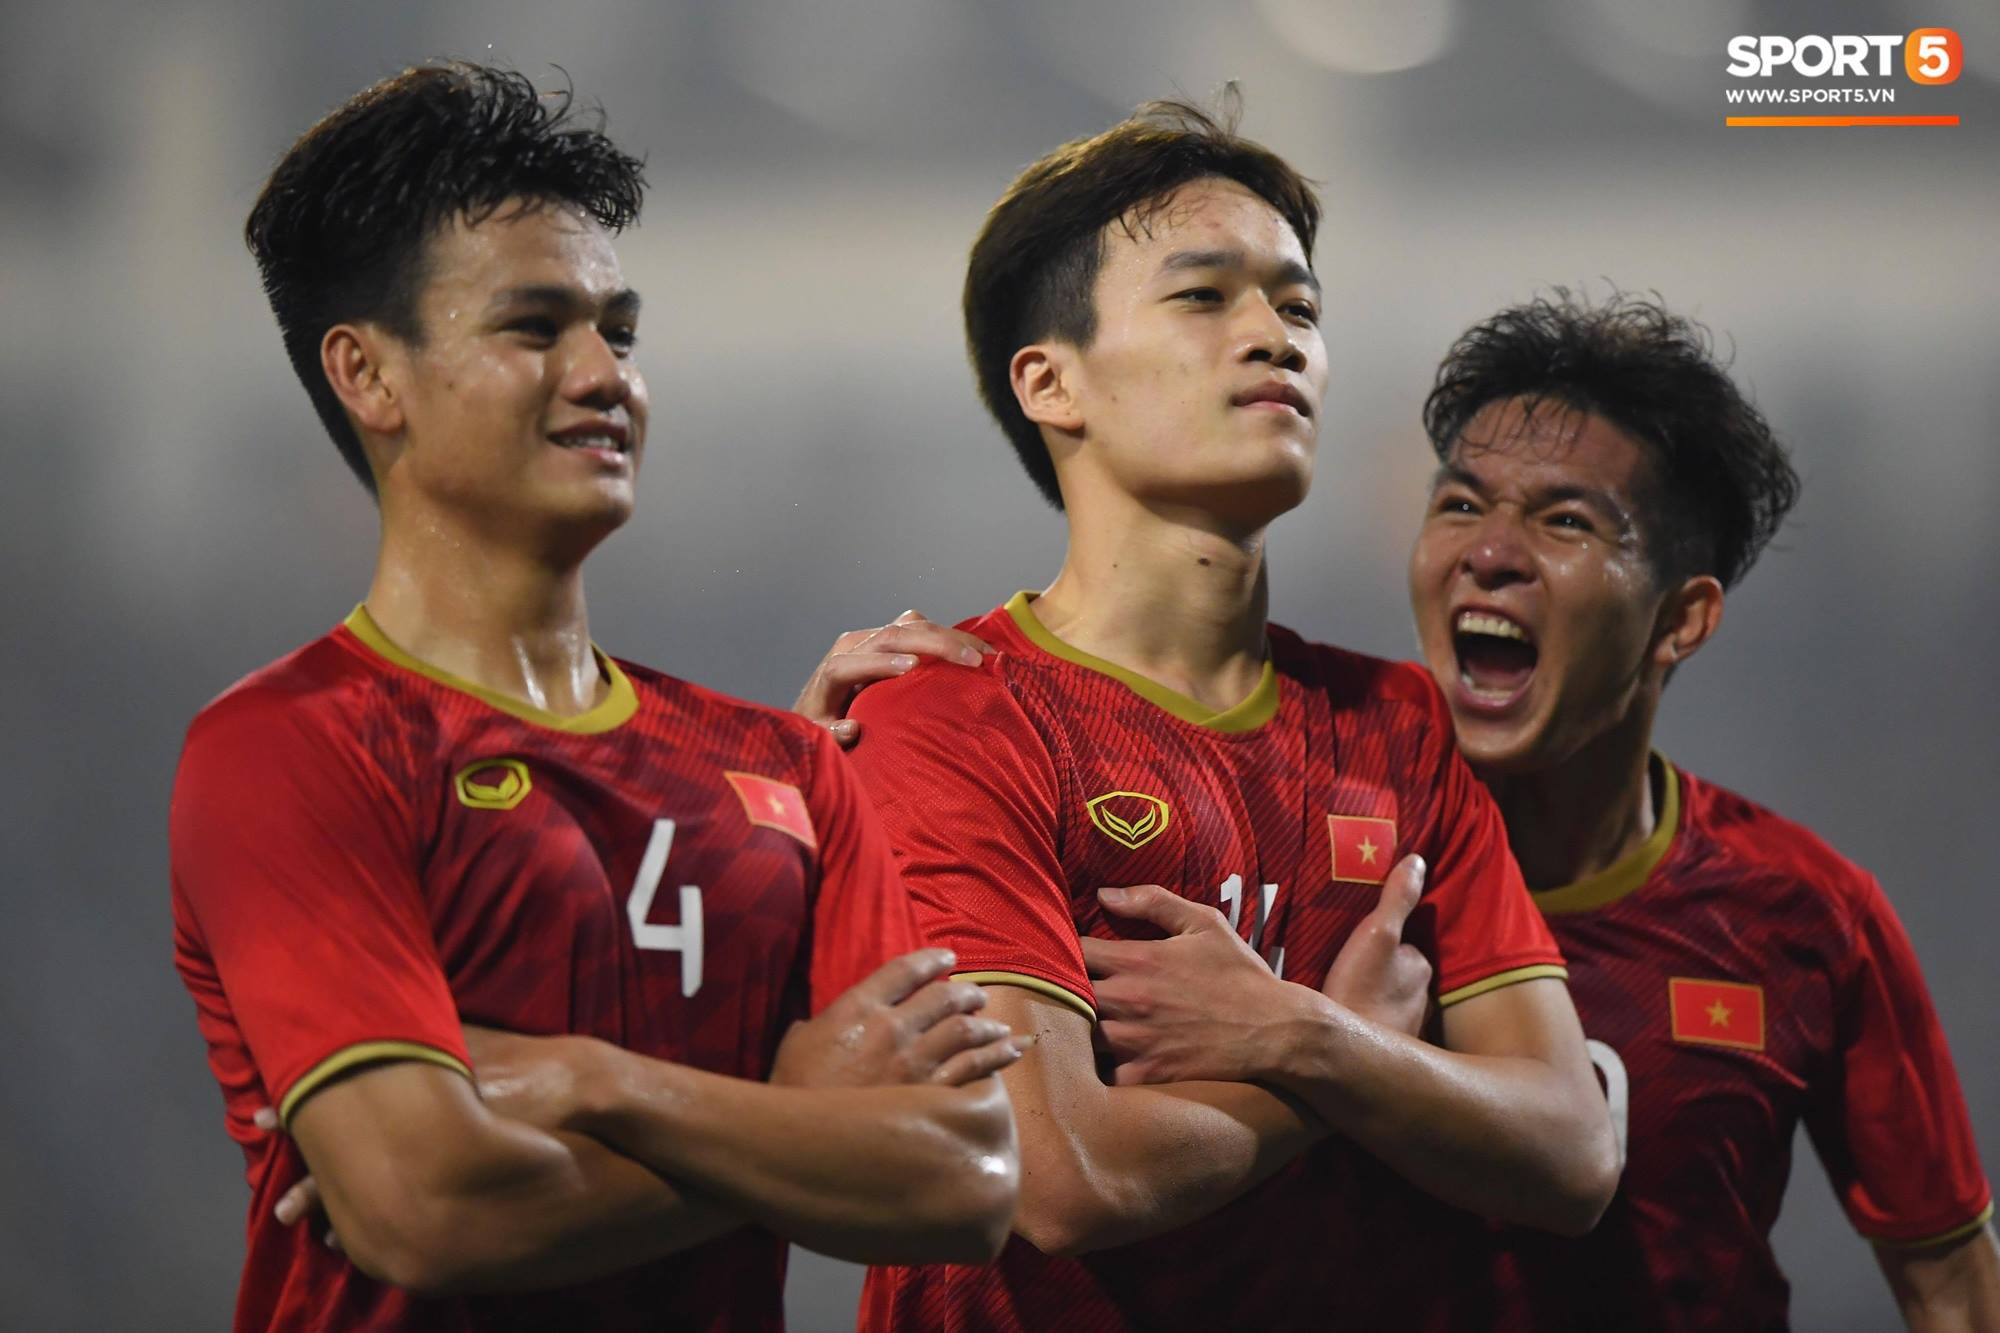 Anh bộ đội ghi bàn vào lưới U23 Thái Lan: Bố mẹ ơi con rất hạnh phúc-2